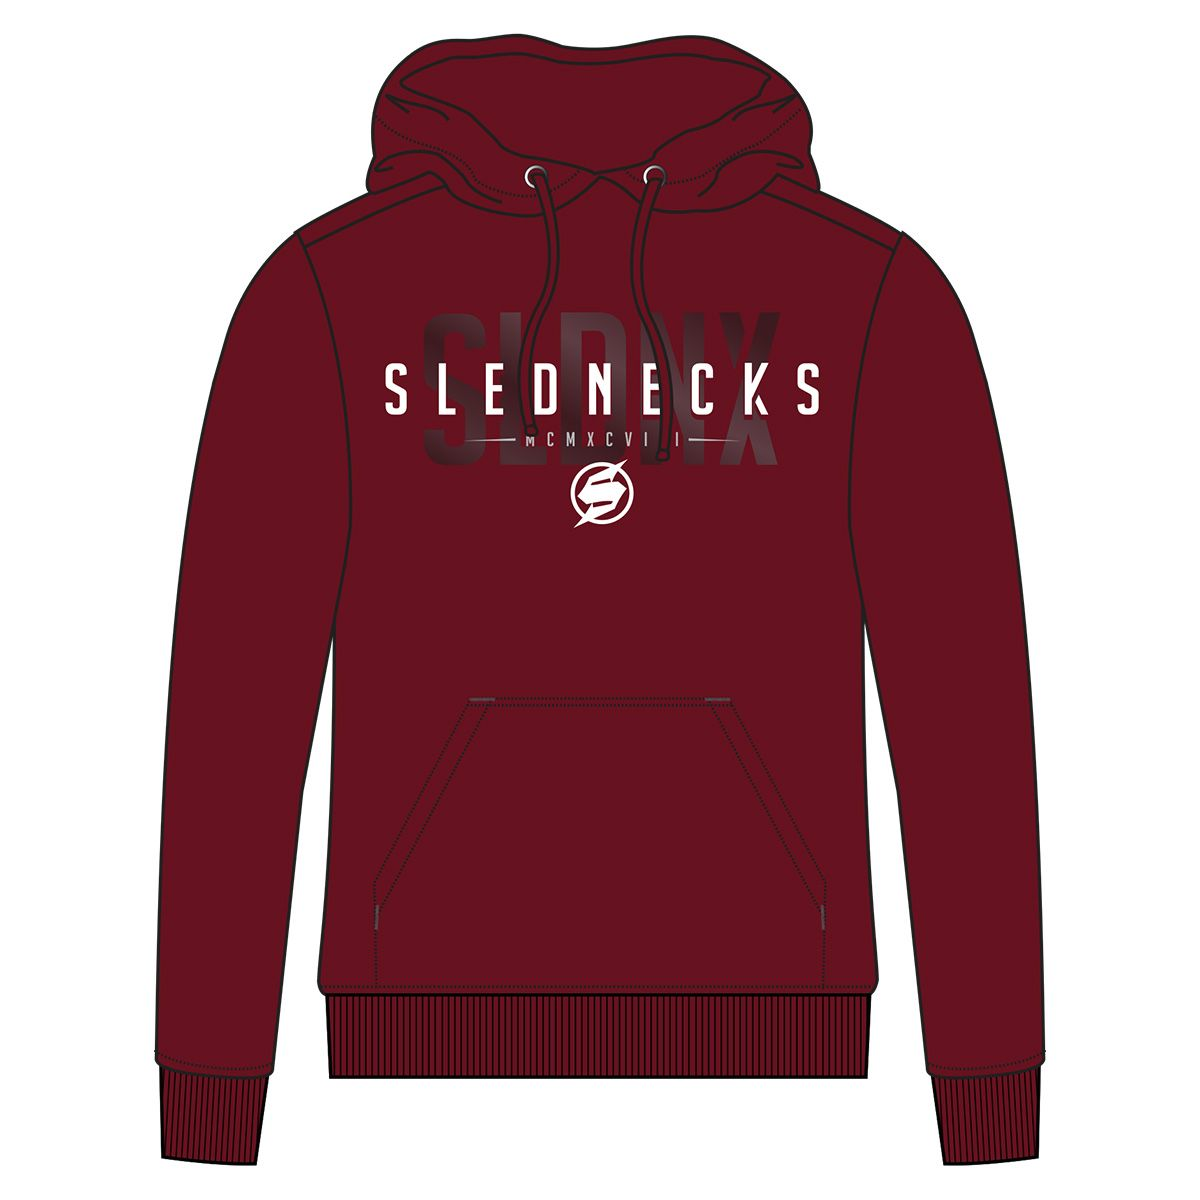 slednecks hoodies  superstealth hoodies - casual